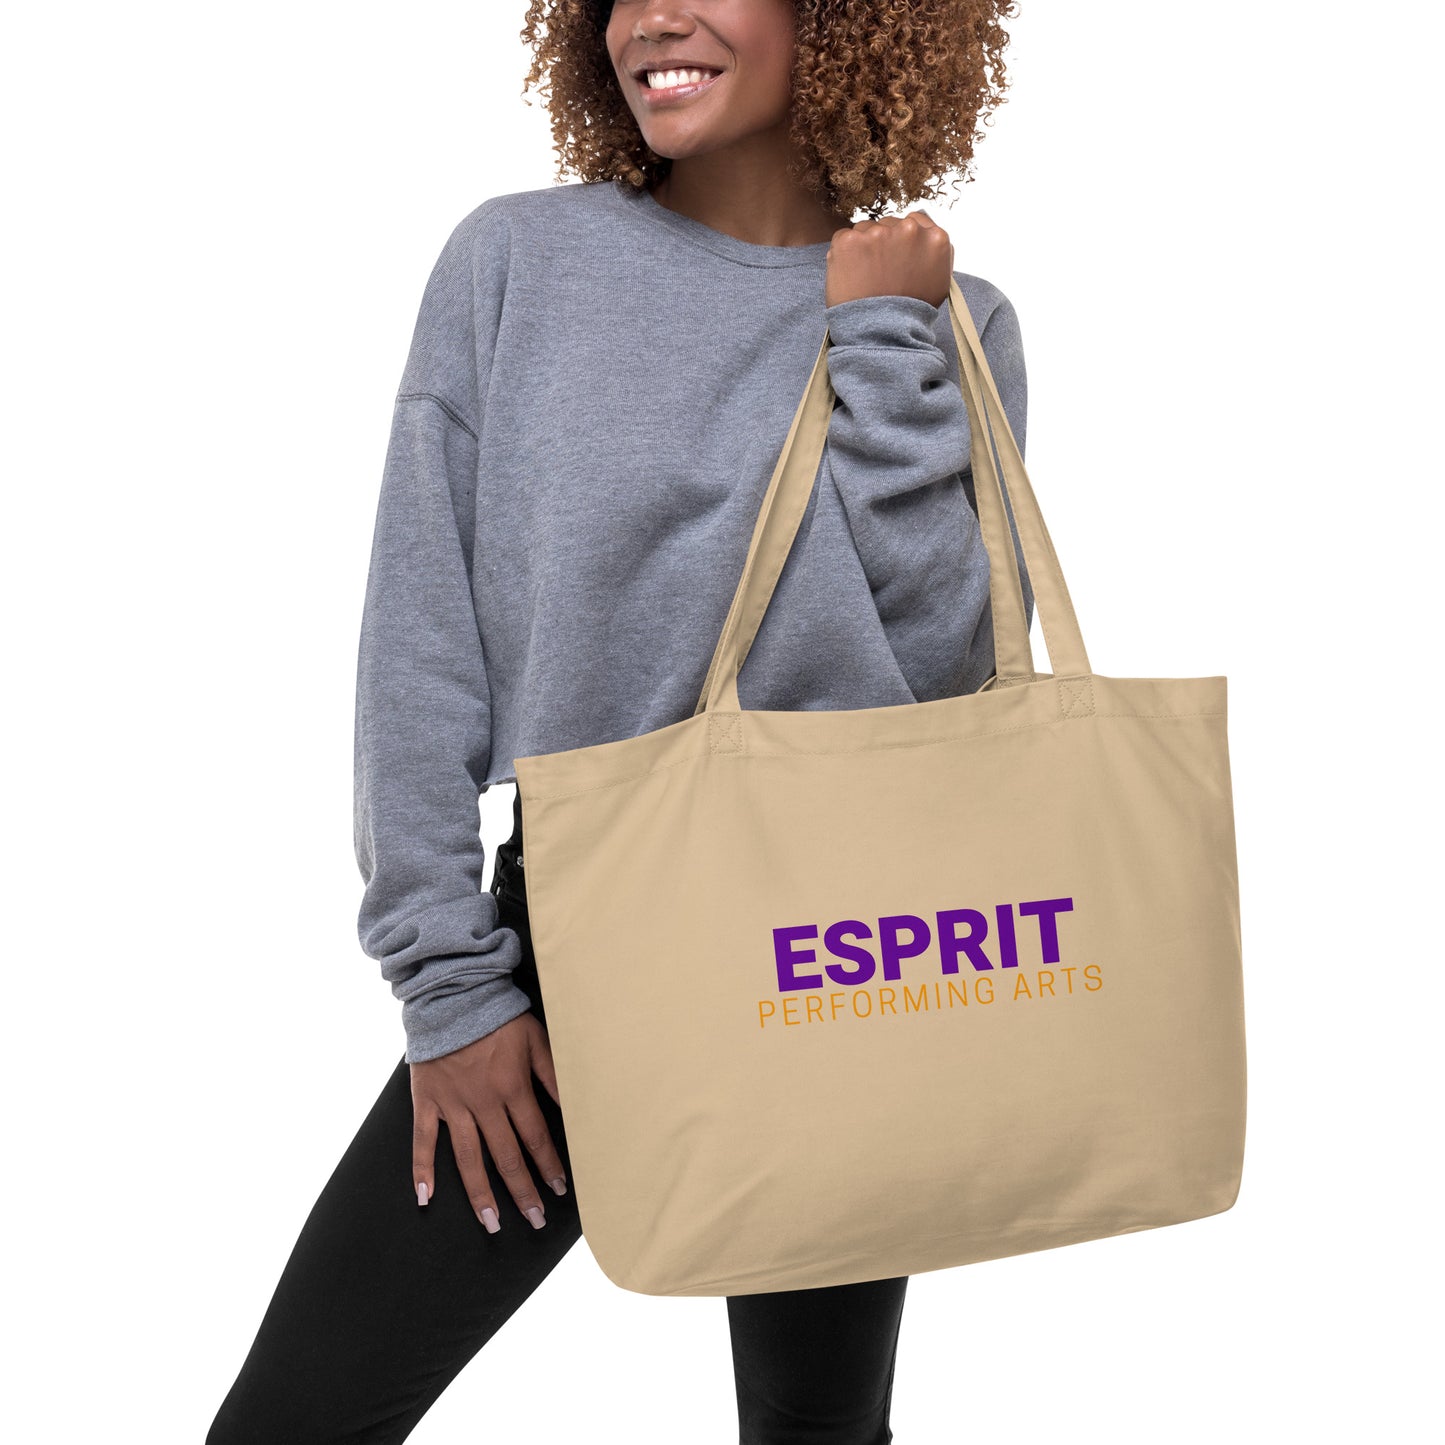 Esprit Performing Arts Large Organic Tote Bag